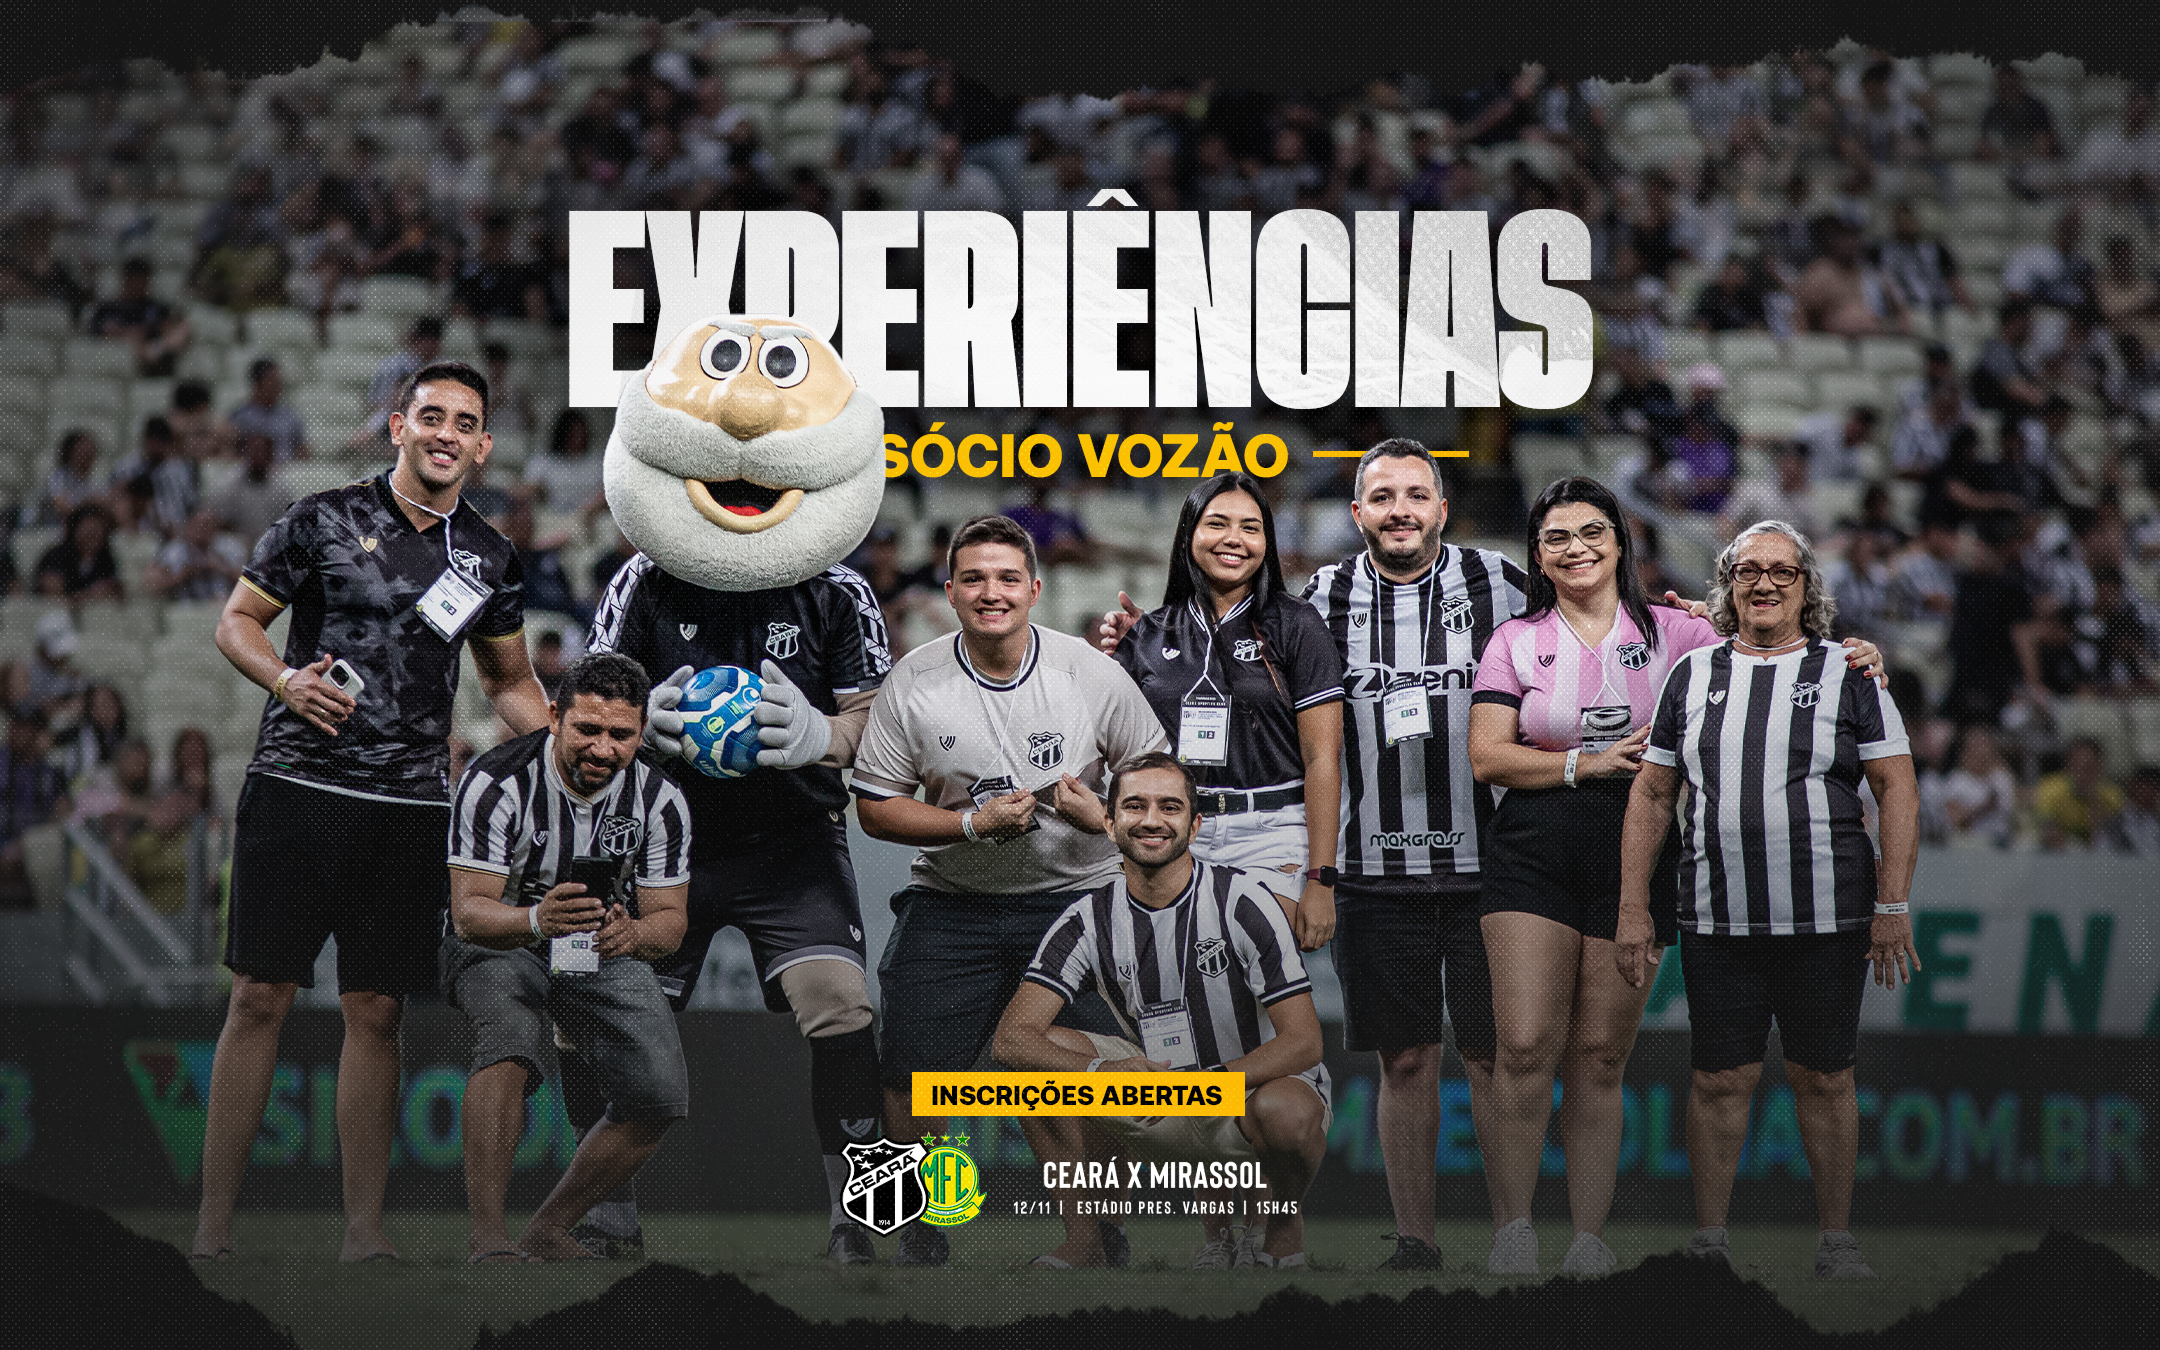 Disponíveis as inscrições para as Experiências Sócio Vozão de Ceará x Mirassol